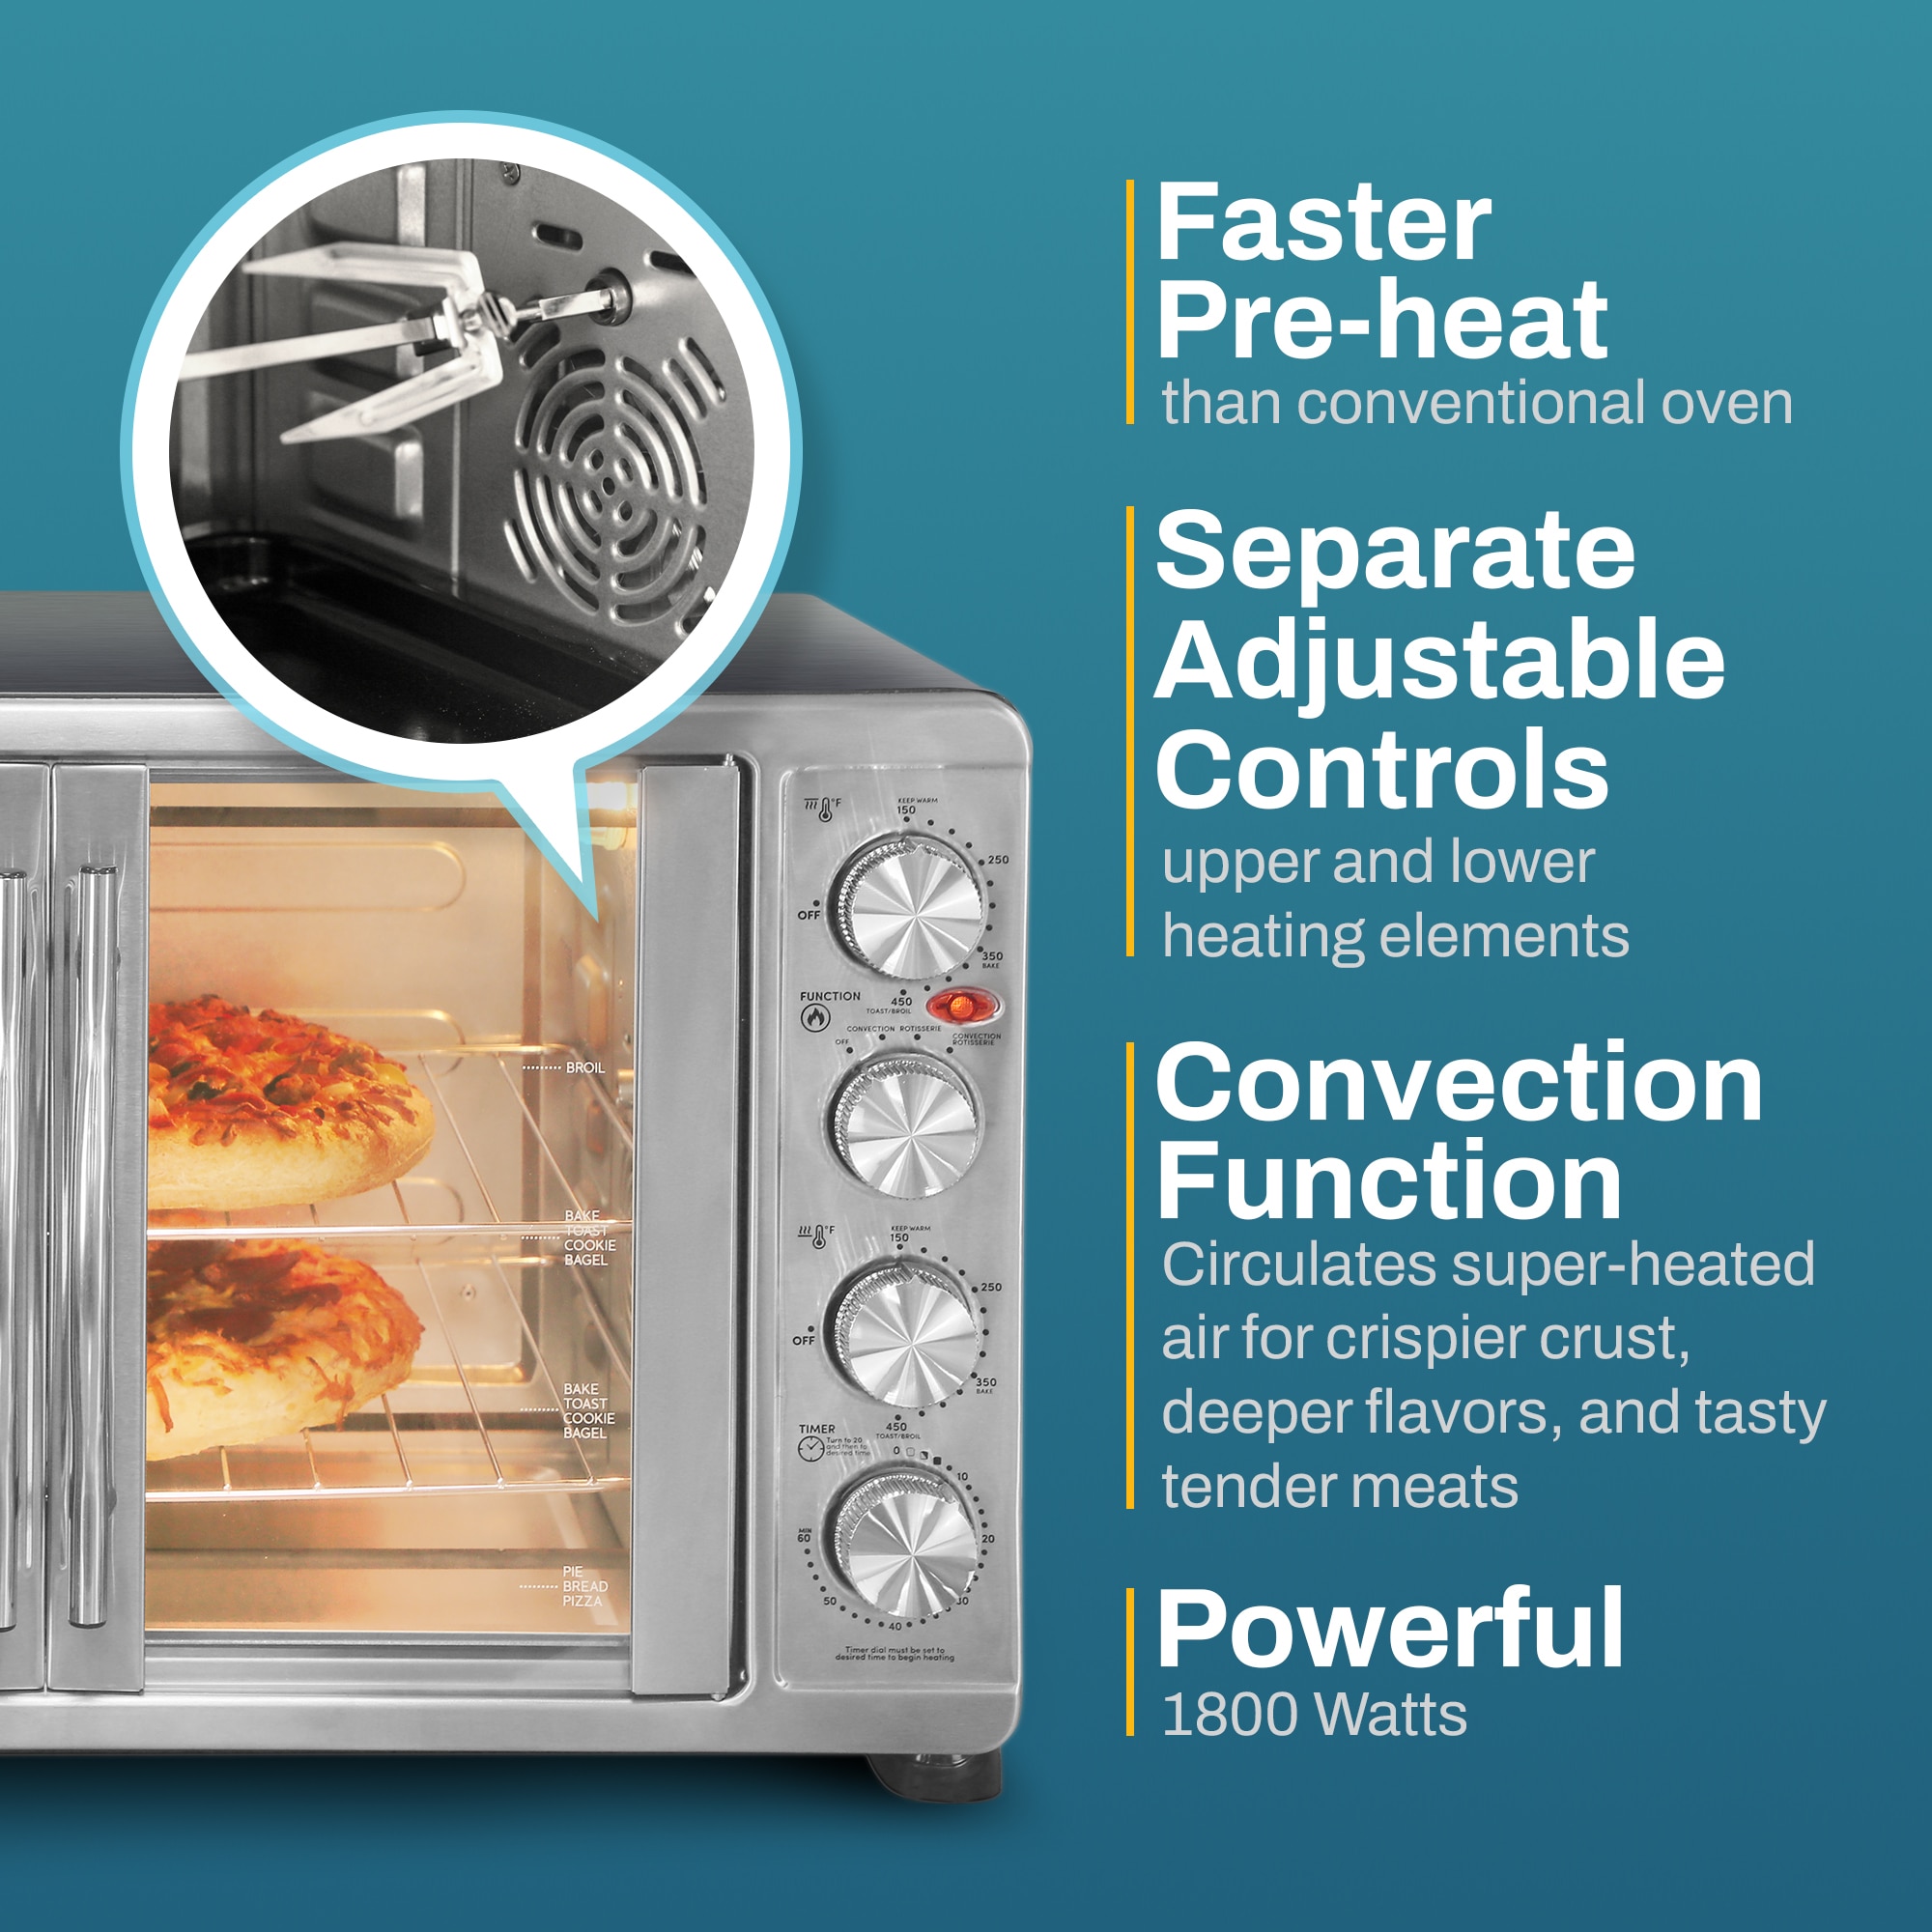 5 Best Countertop Rotisserie Oven 